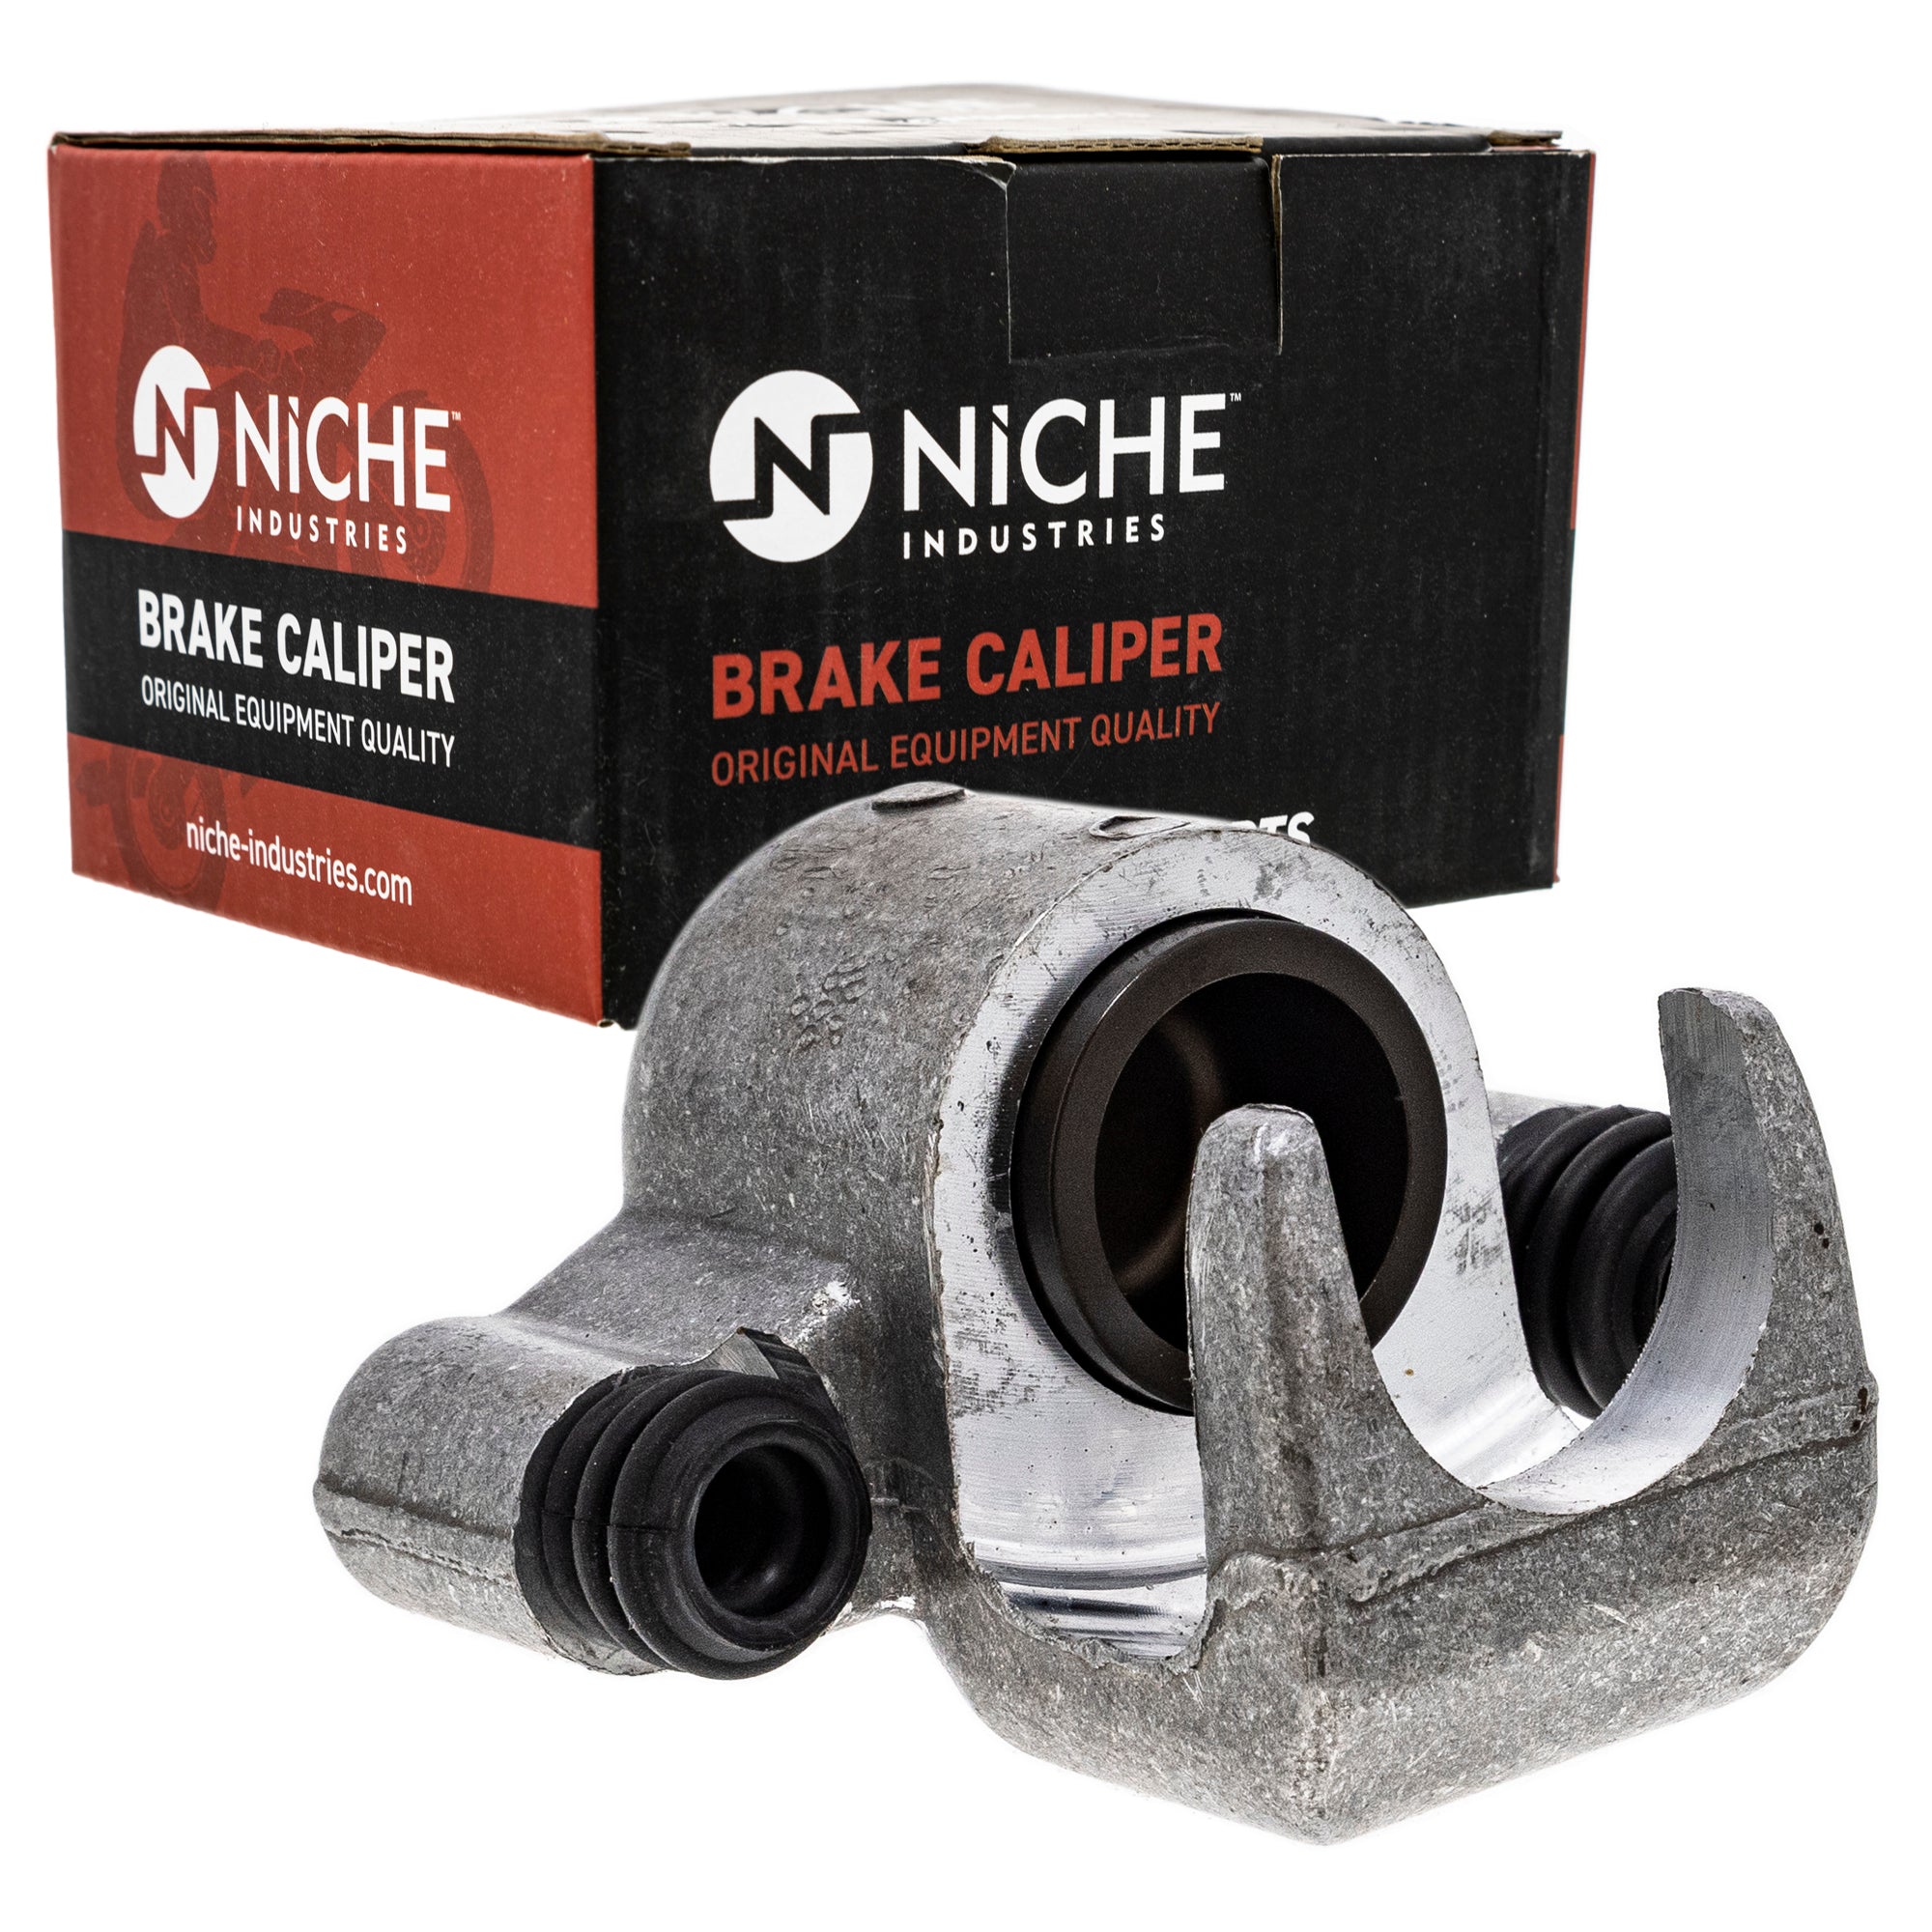 NICHE MK1001029 Brake Caliper Kit